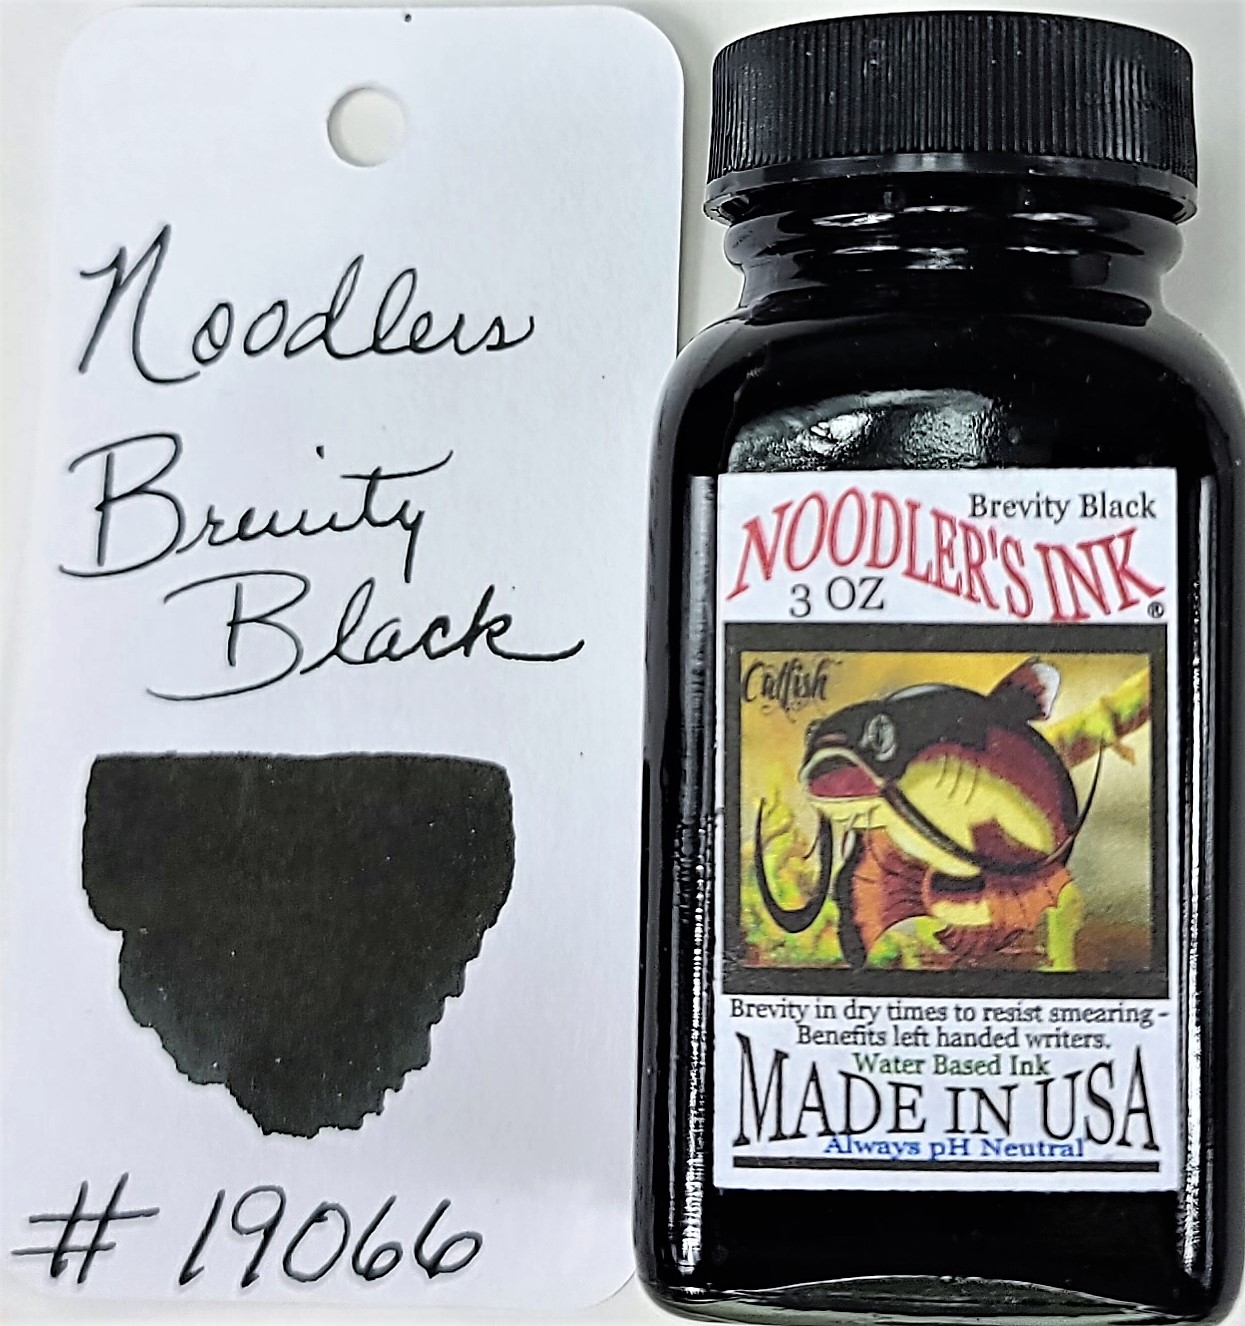 19070 Brevity Blue Black — Noodler's Ink